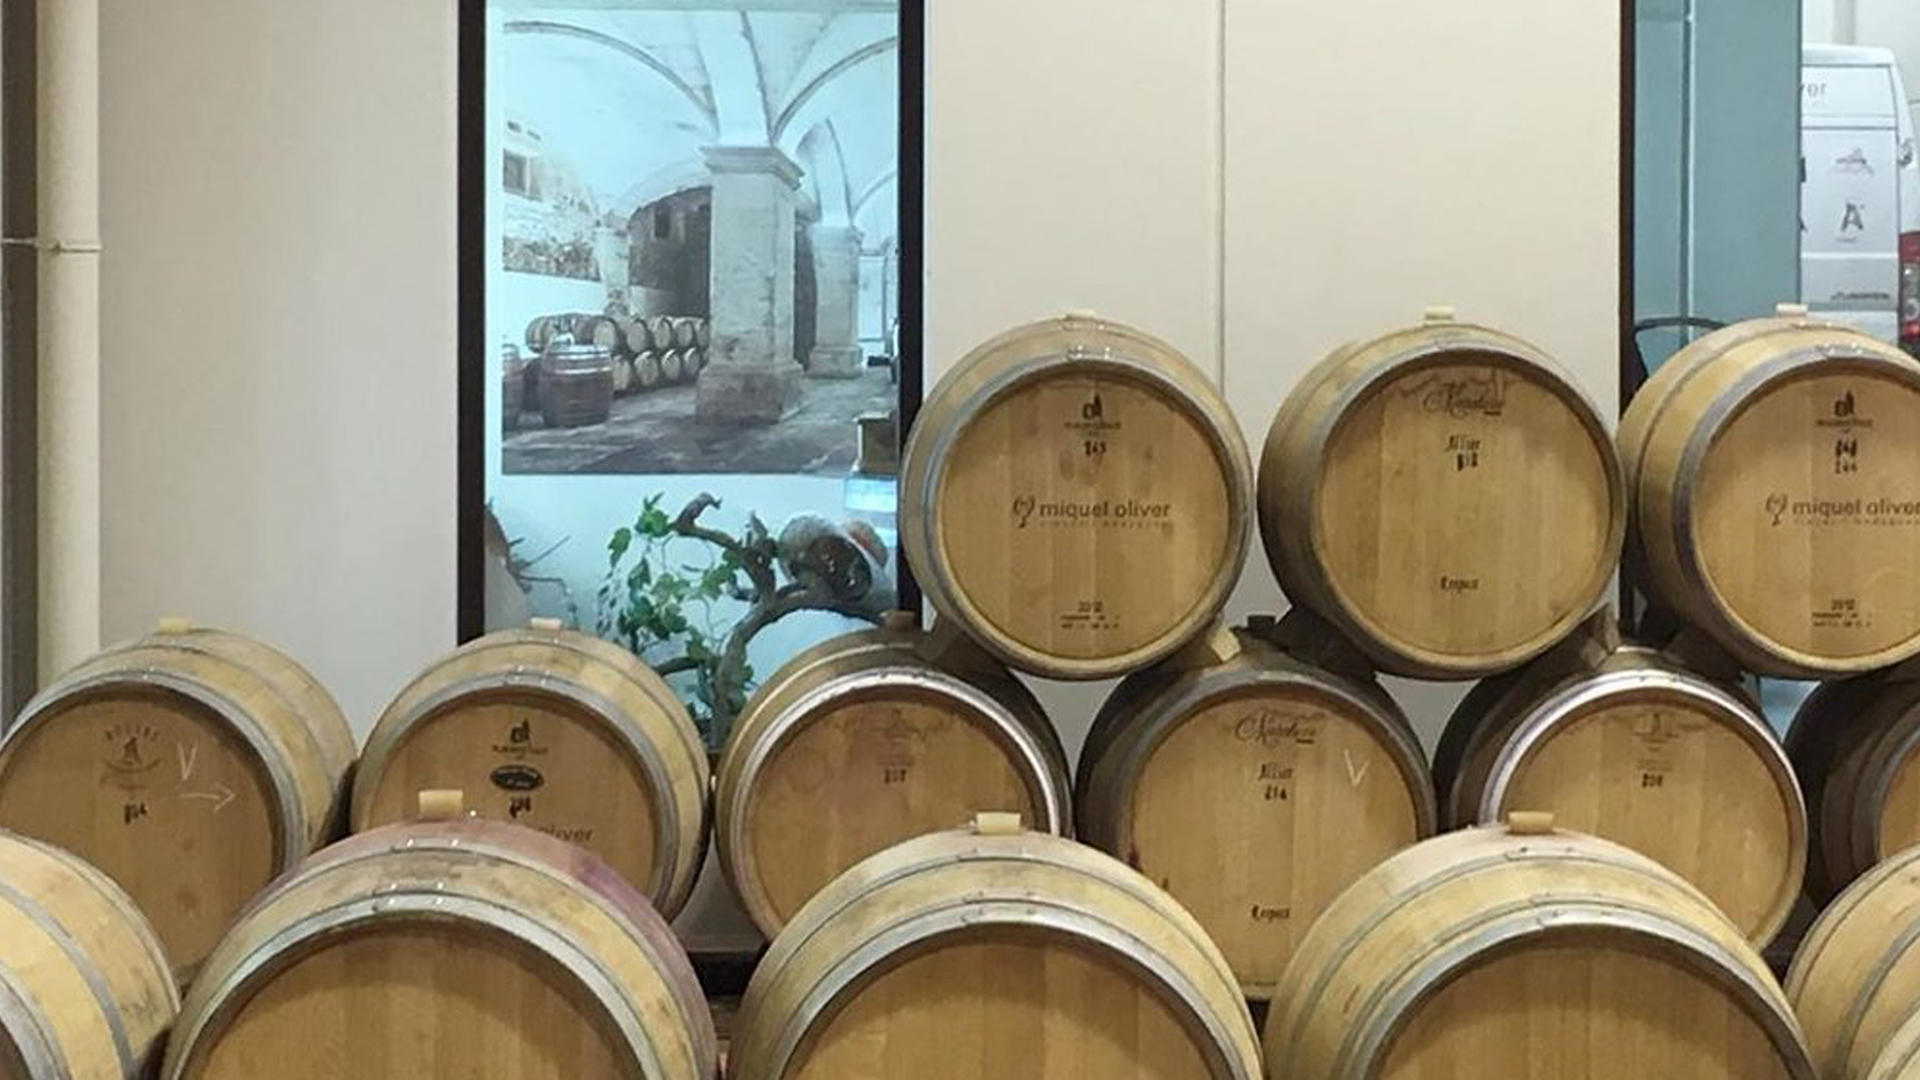 Miquel Oliver bodegues wine barrels